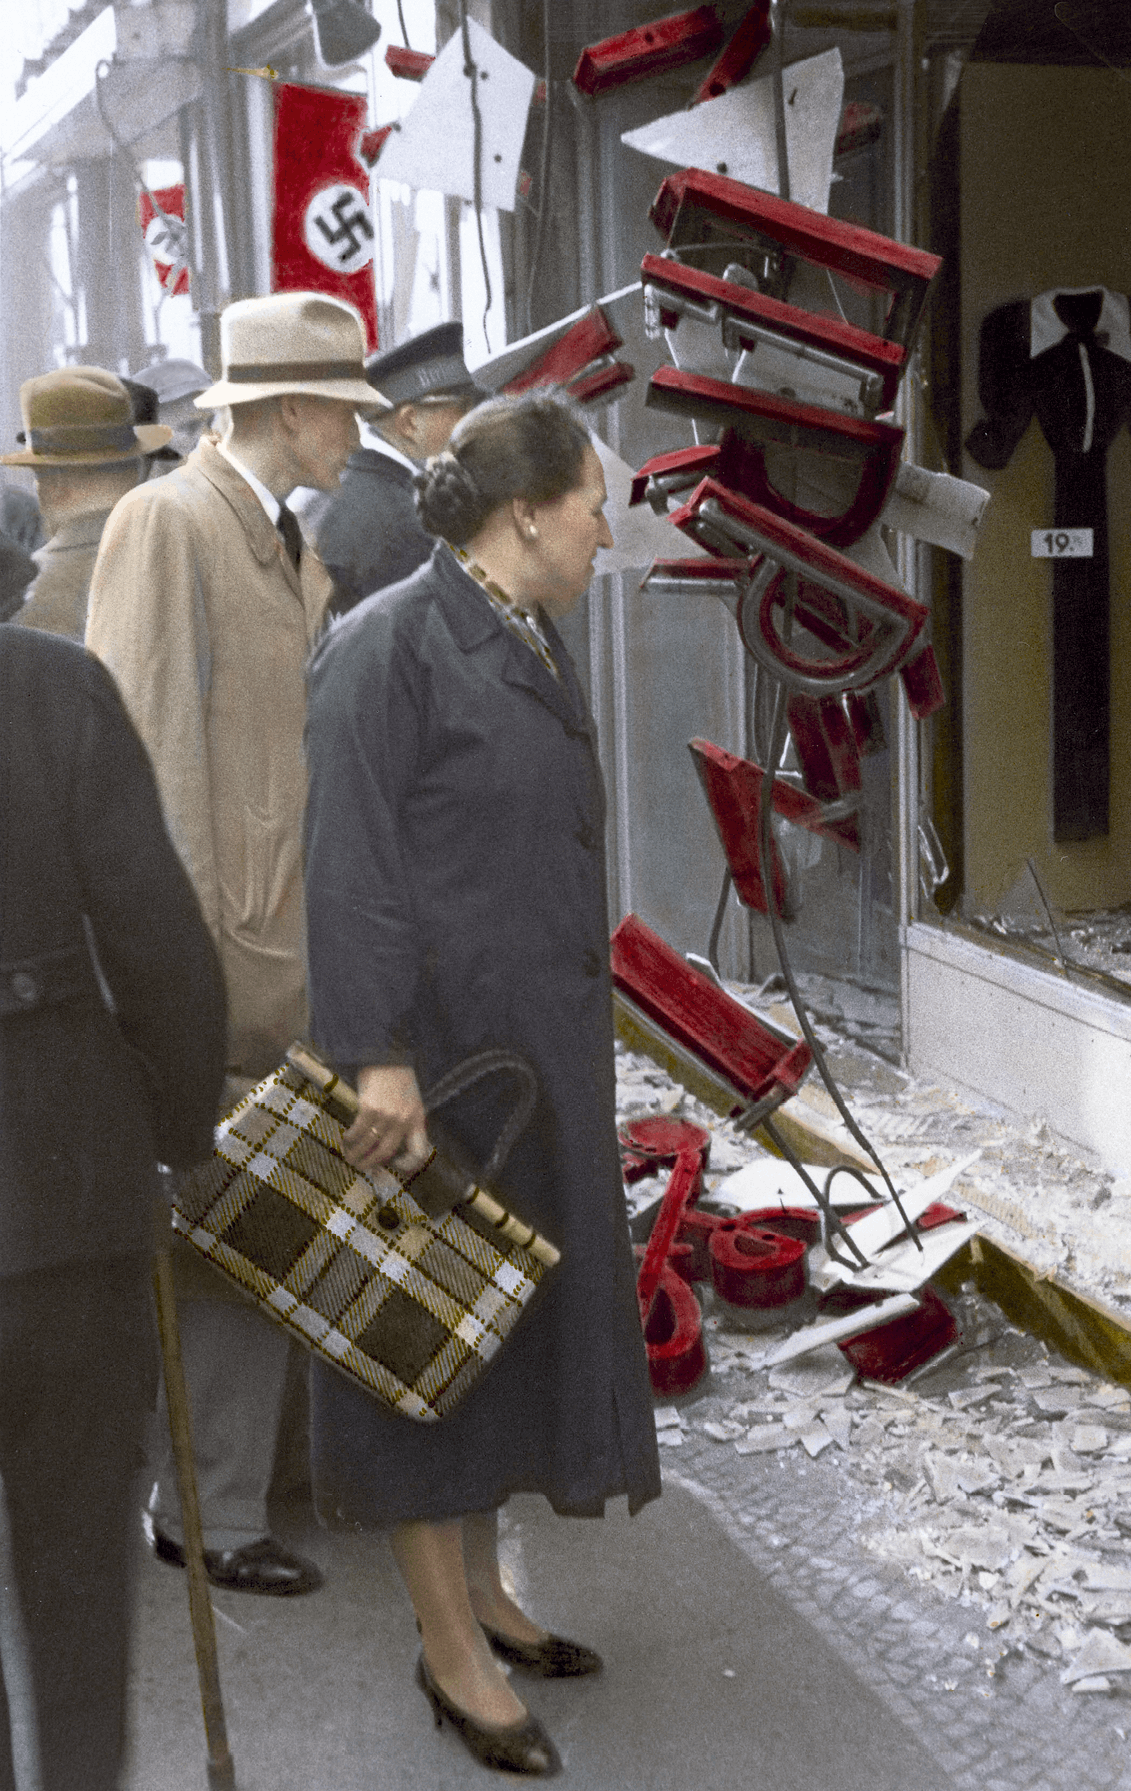 Boutique juive pillée et détruite à Berlin, 9 novembre 1938,
photographie anonyme.